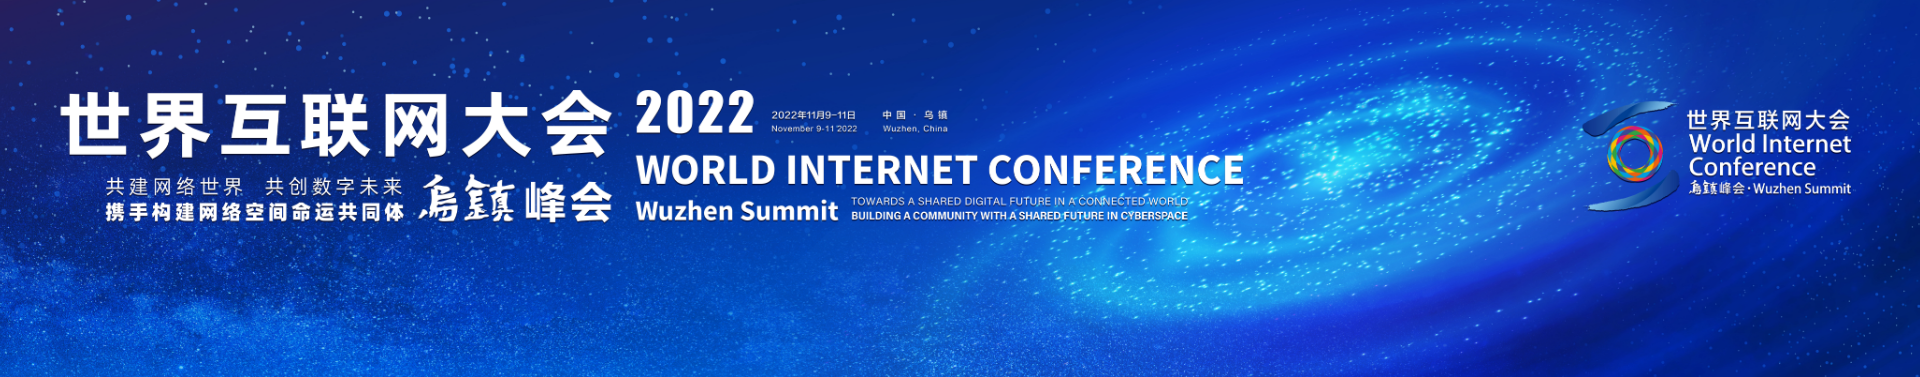 2022世界網際網路大會烏鎮峰會